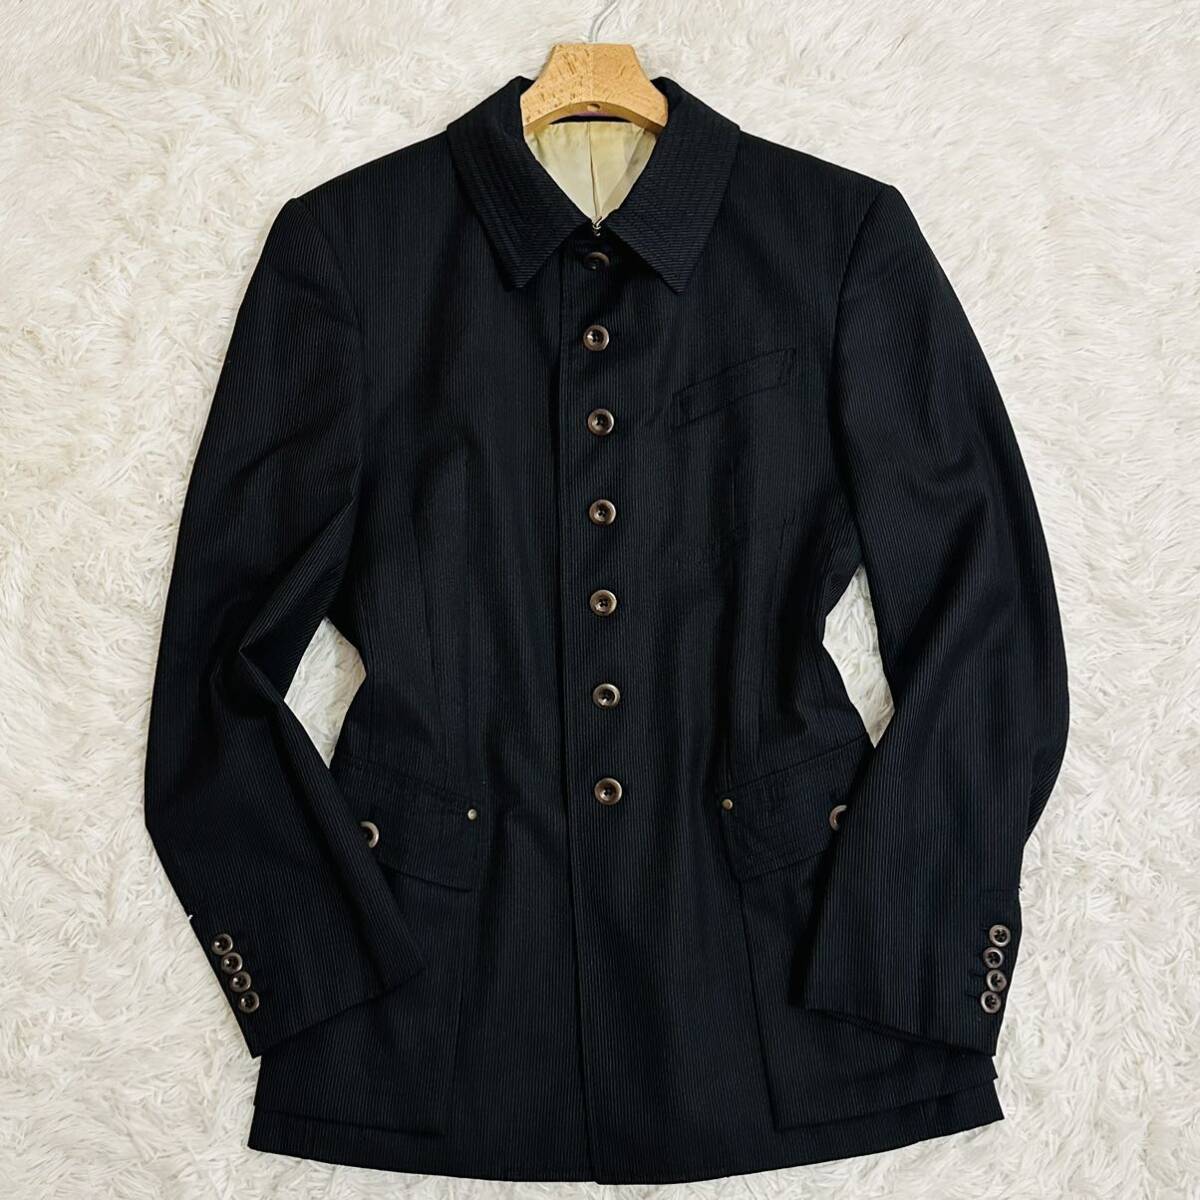  супер редкий XL Paul Smith коллекция жакет блузон шерсть костюм внешний сделано в Японии мужской LL черный чёрный Paul Smith COLLECTION